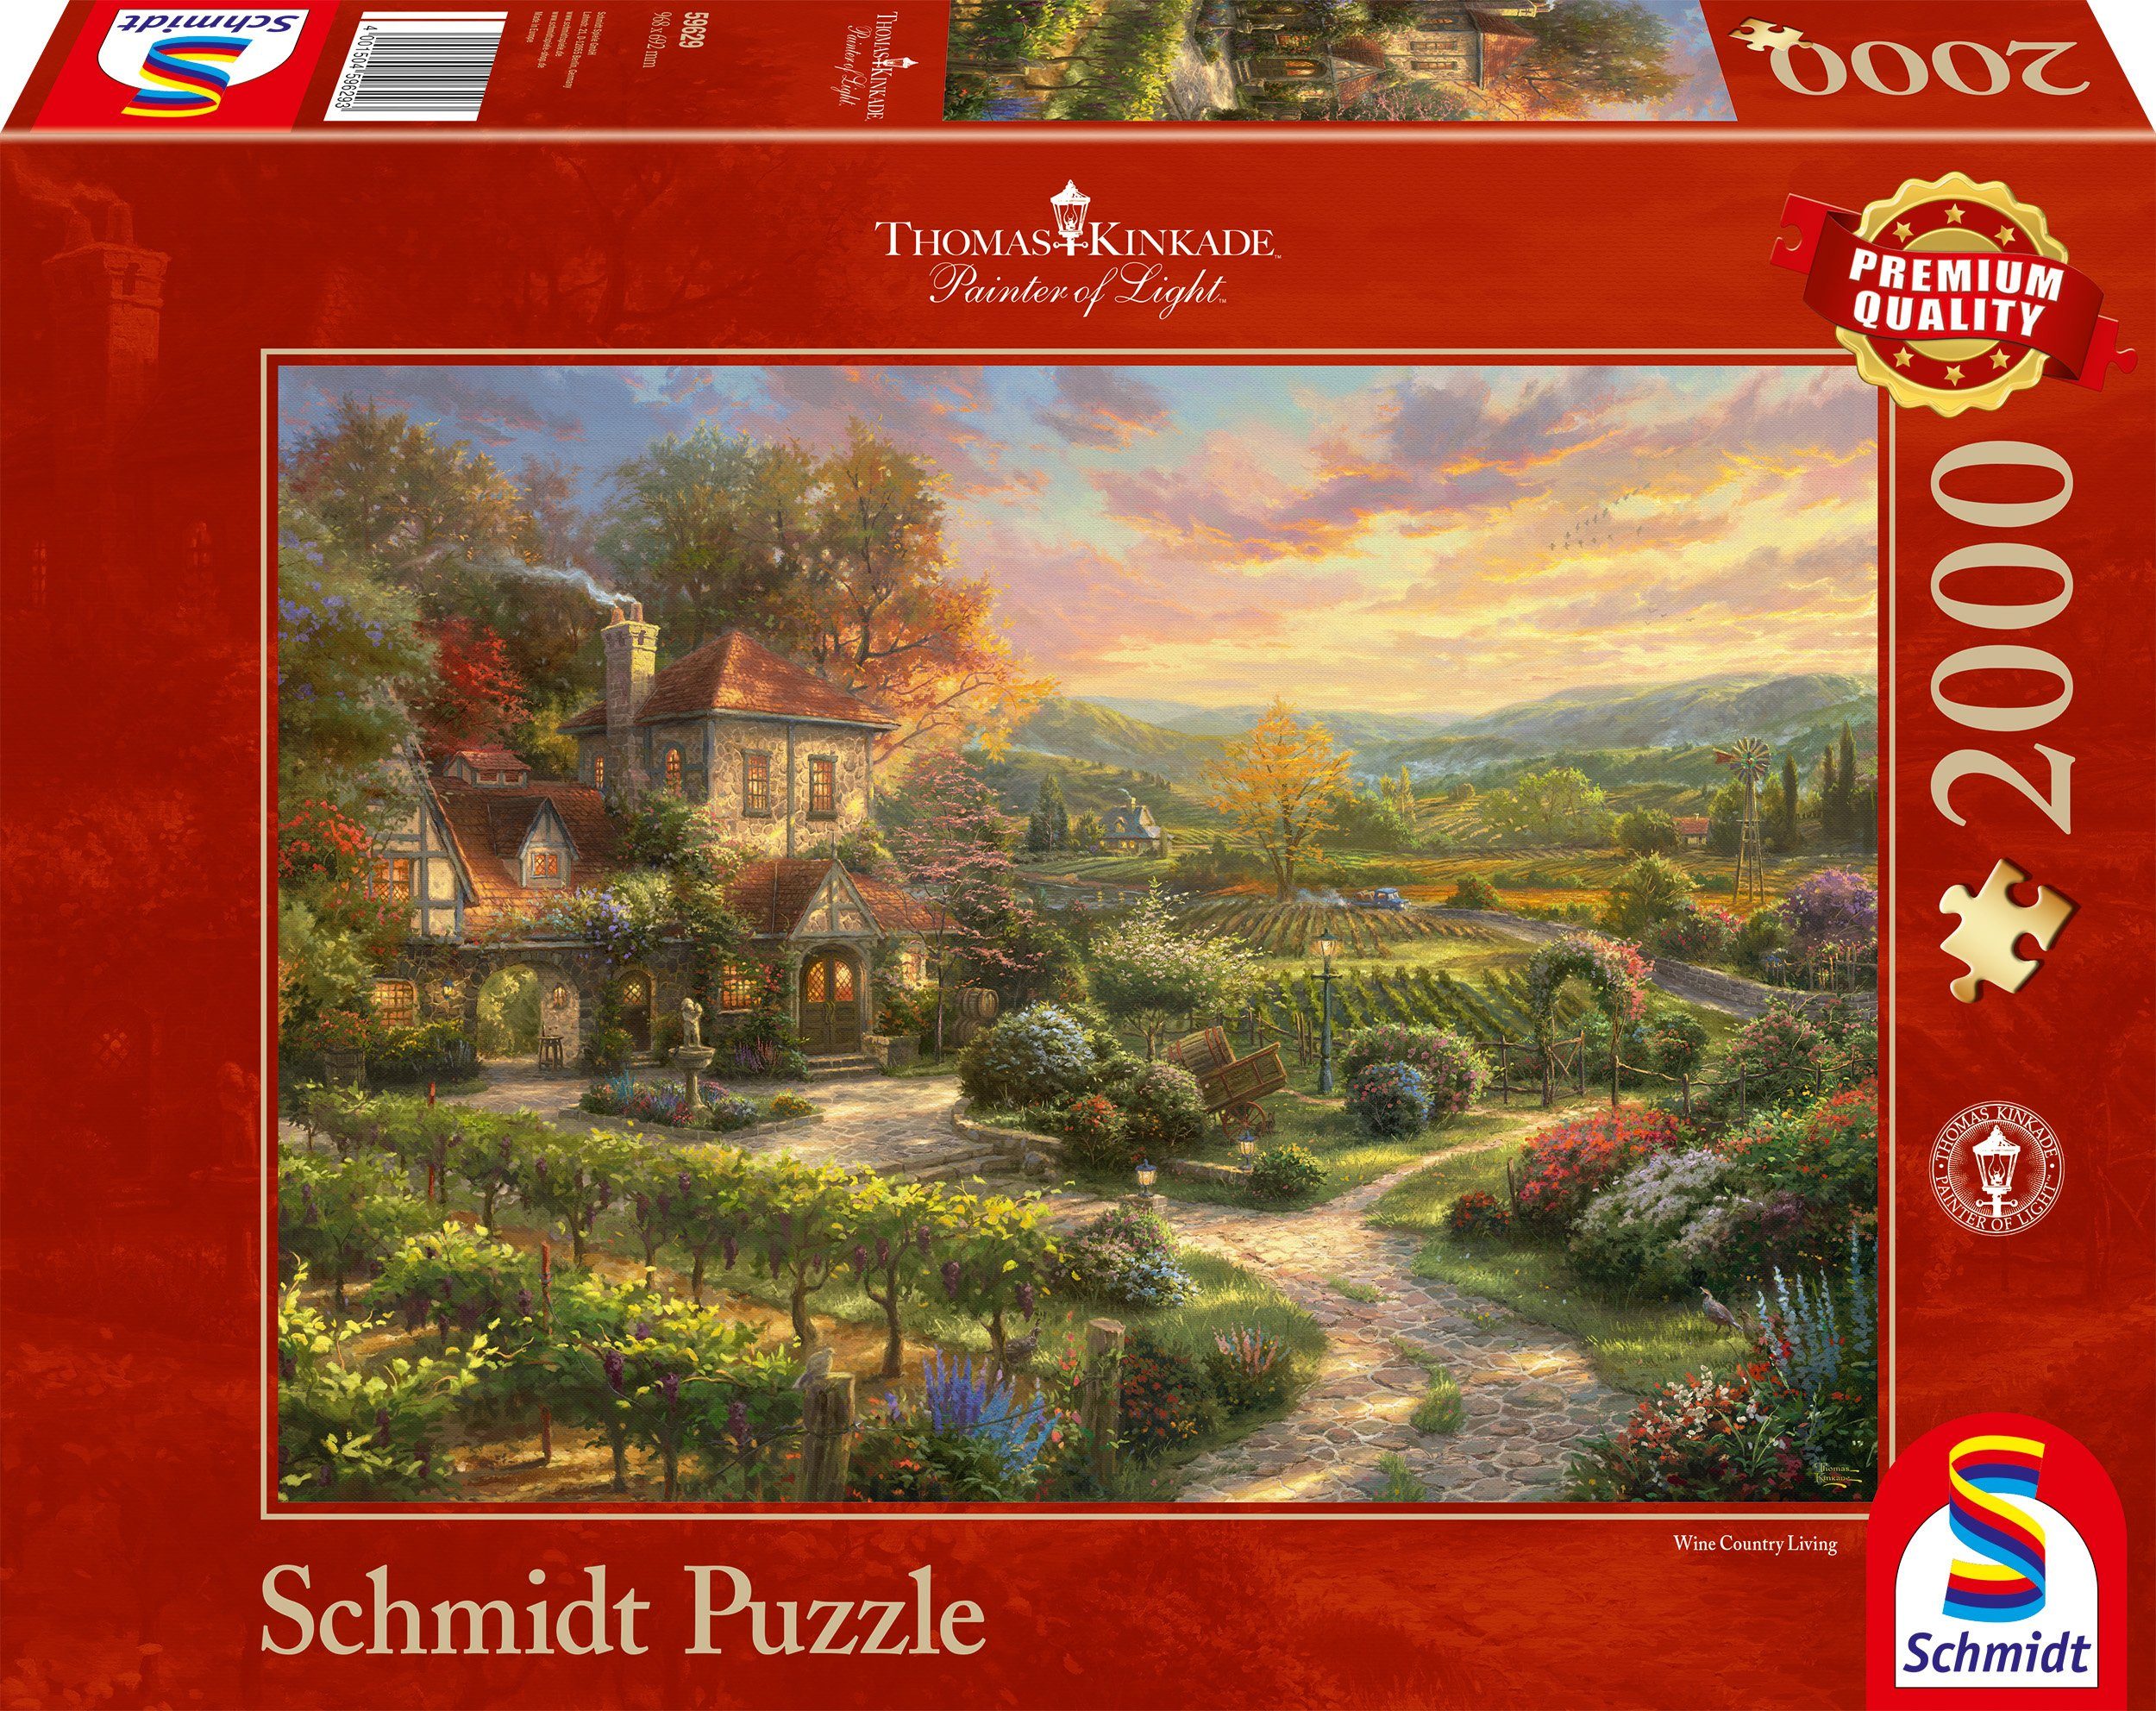 Schmidt Spiele Puzzle »In den Weinbergen«, 2000 Puzzleteile, Thomas Kinkade  online kaufen | OTTO